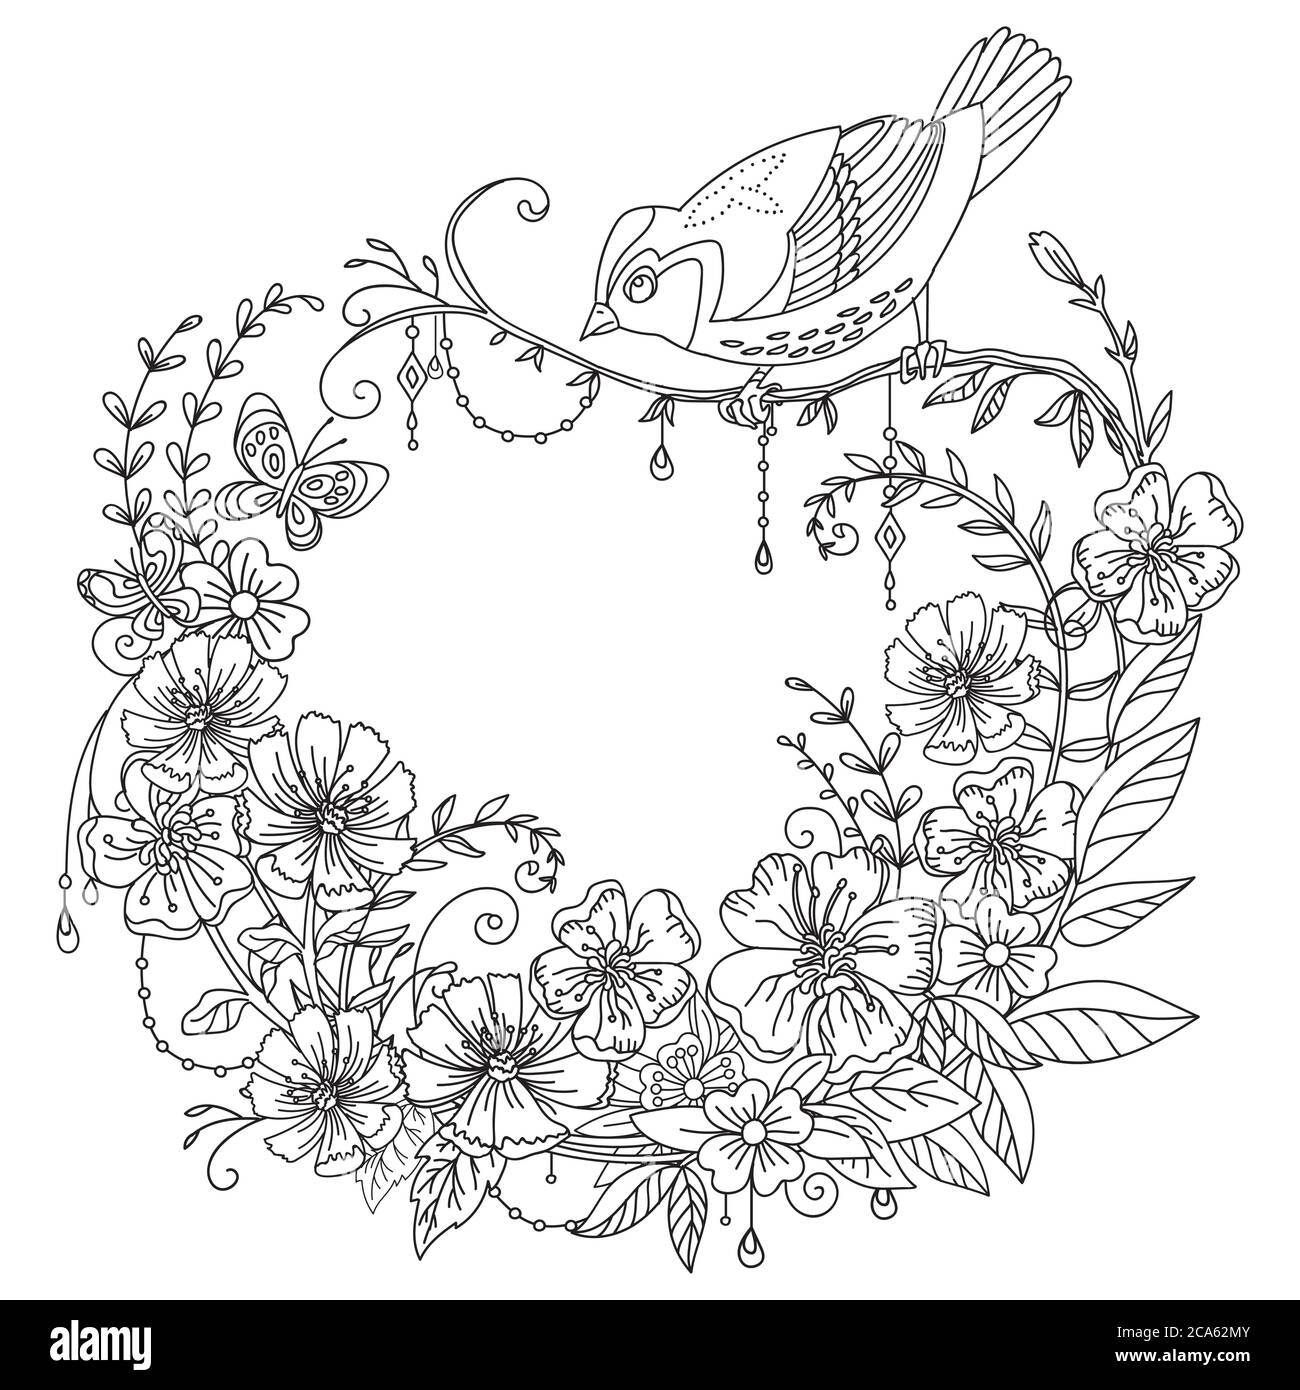 Vektor-Färbung ornamentalen wreth mit singvogel und Blumen in Kreis Zusammensetzung. Dekorative Abbildung schwarze Konturzeichnung isoliert auf weiß. Für Stock Vektor